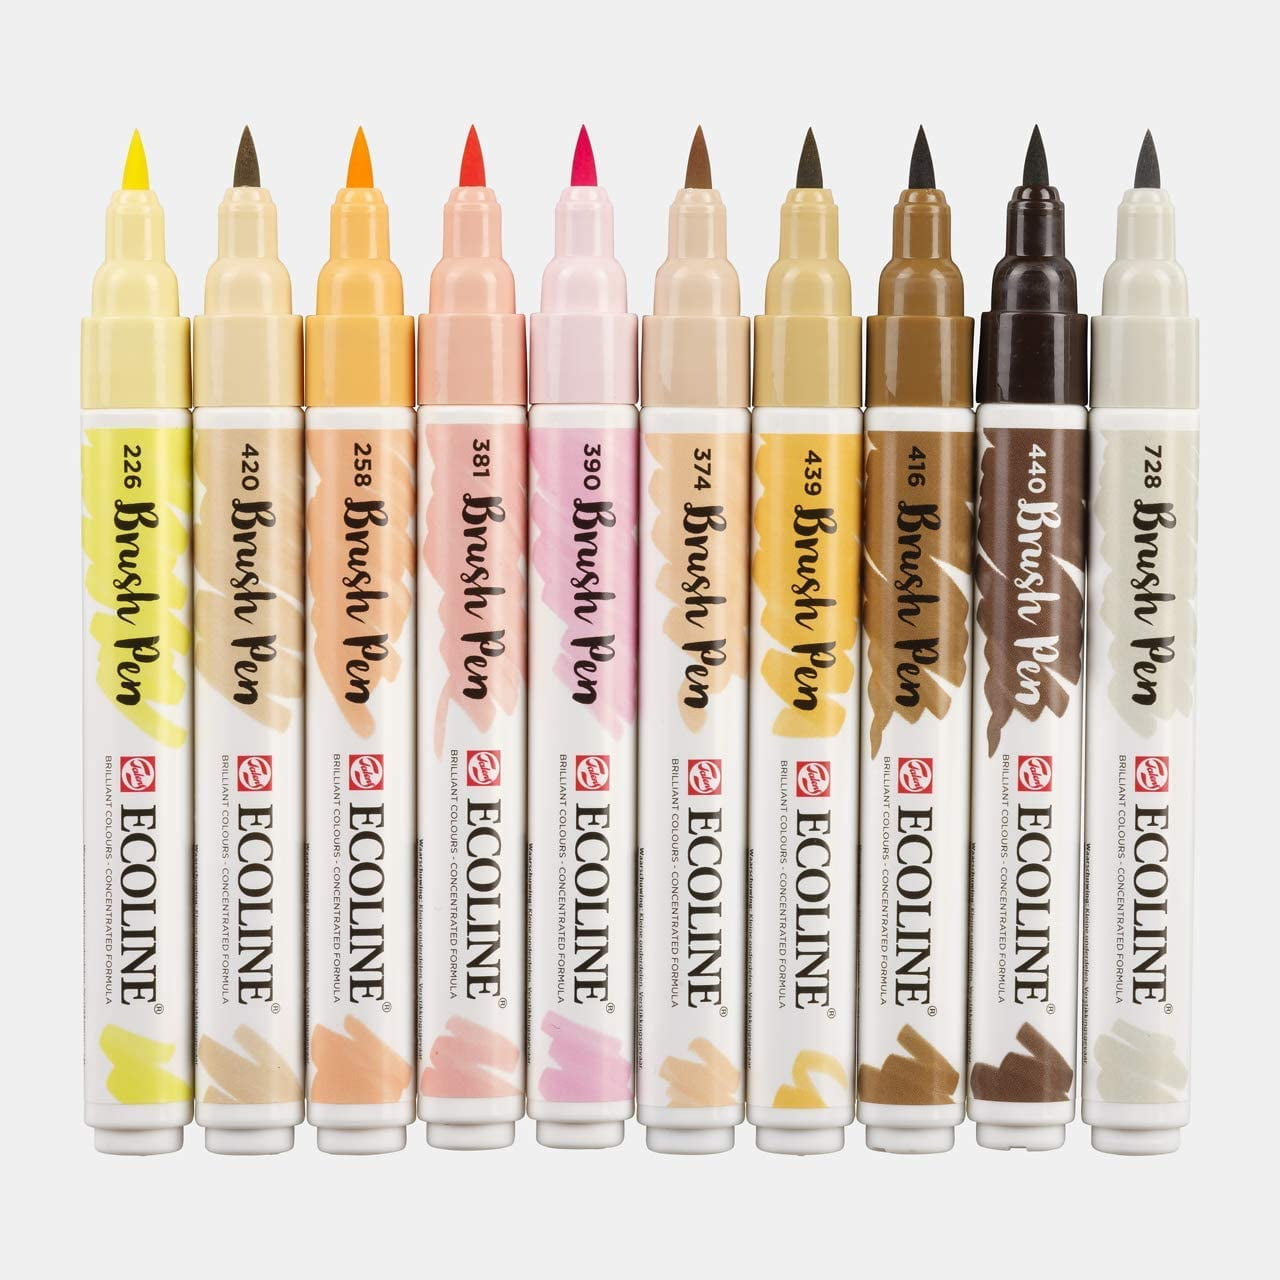 Verrijken Nederigheid combinatie Ecoline Brush Marker Set, 10-Pen Skin Colors Set - Walmart.com